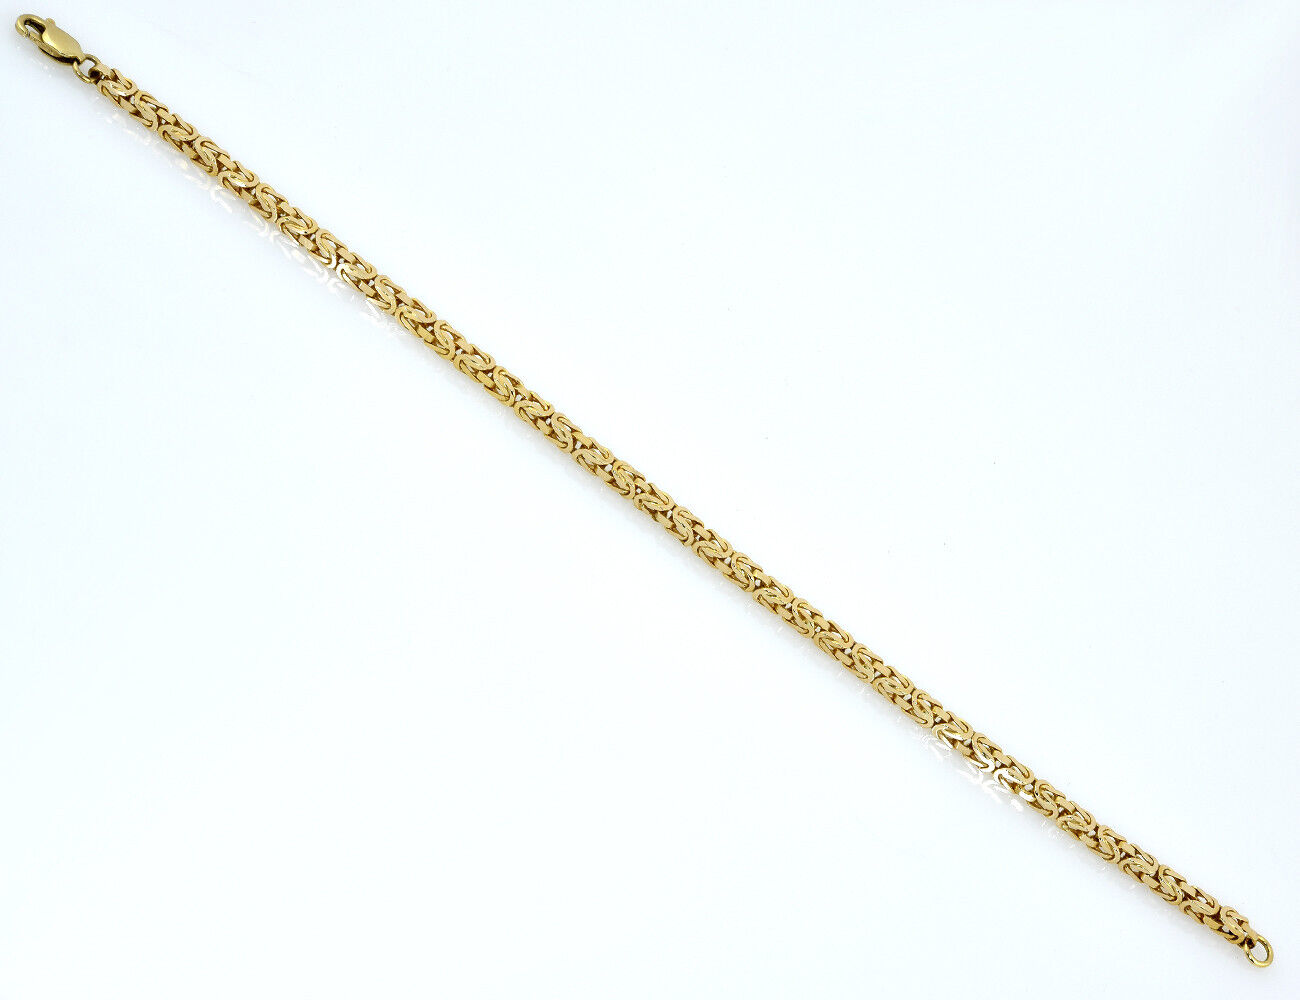 Armband Königskette 585/000 14 K Gelbgold 20,5 cm lang